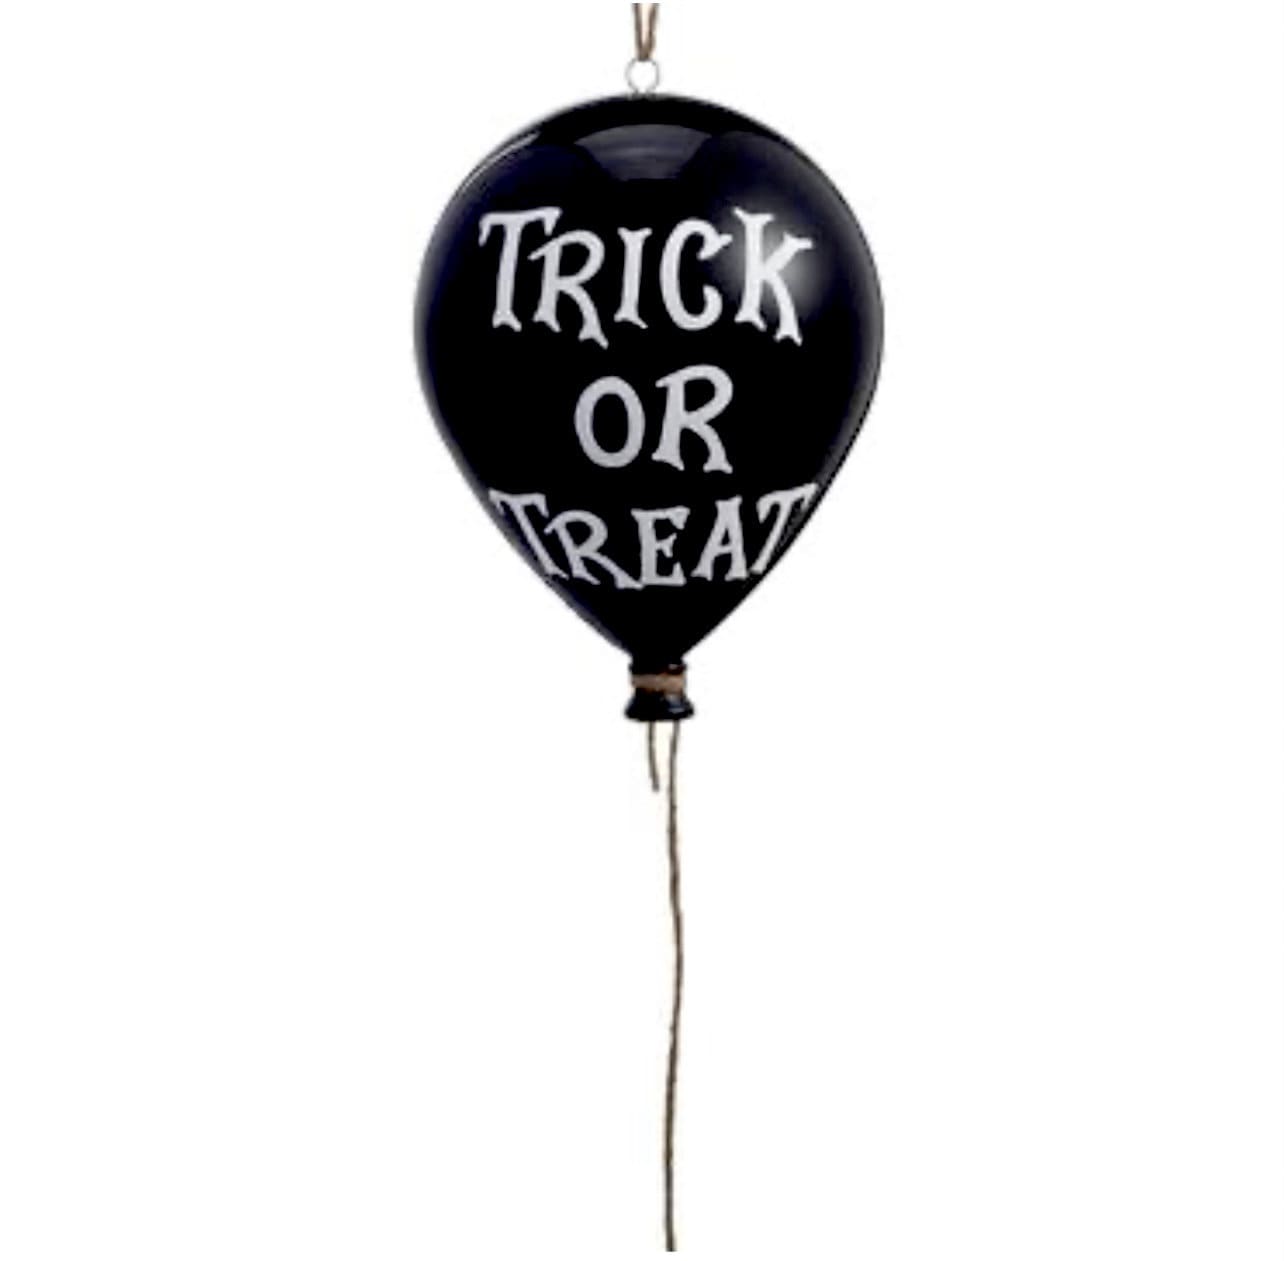 Trick or Treat Ballon Ornament ~ 8 inch